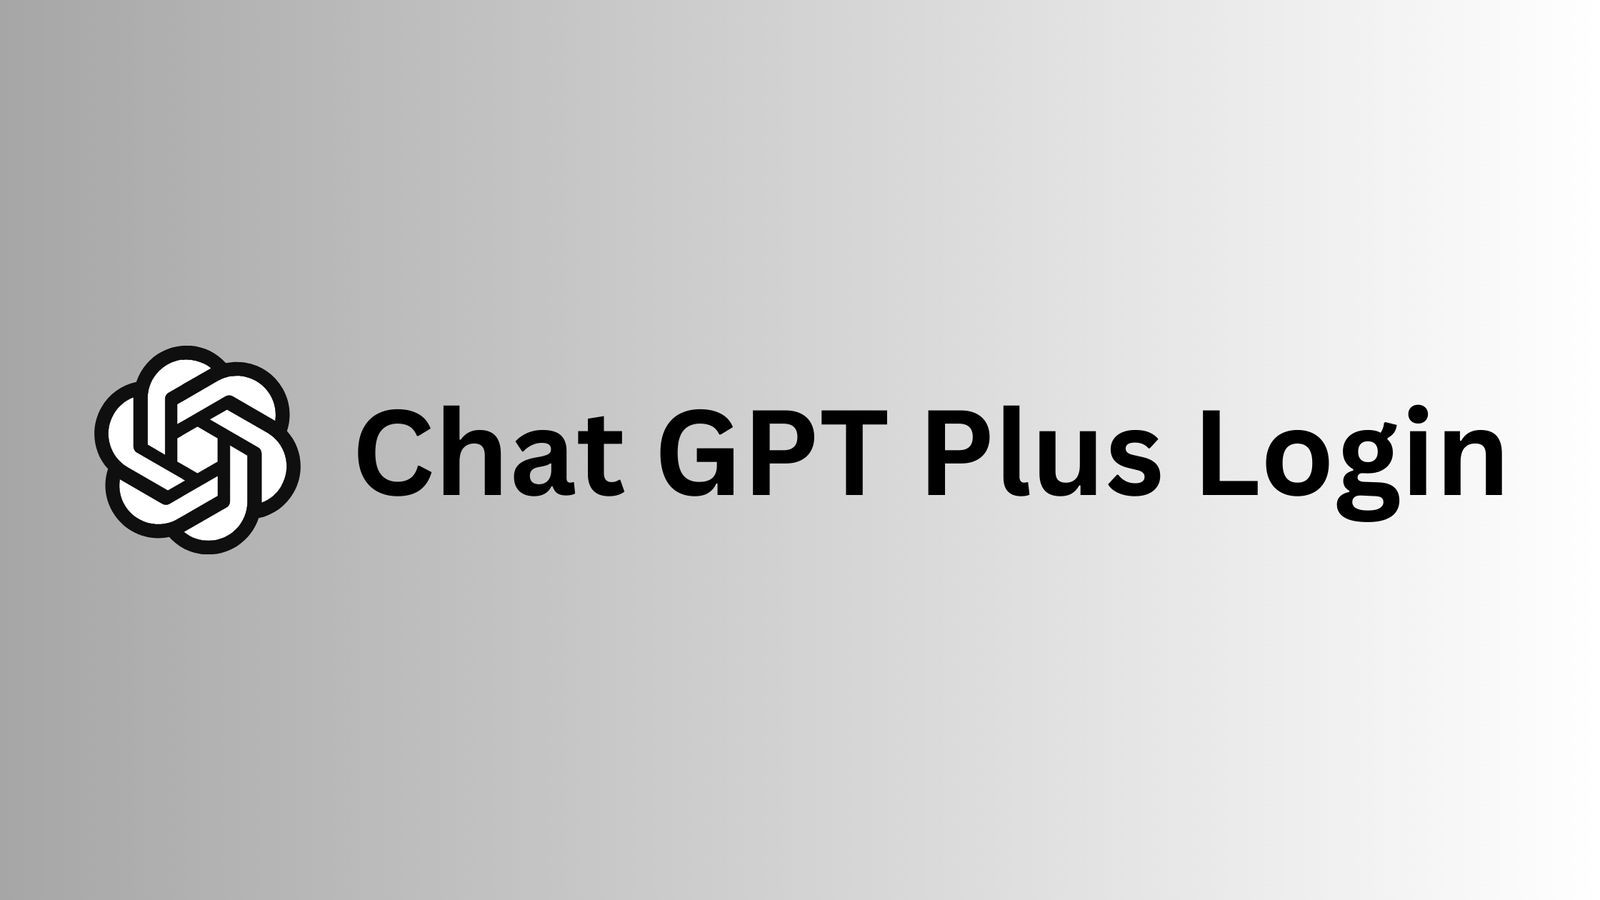 Chat GPT Plus Login - ChatGPT Plus Login